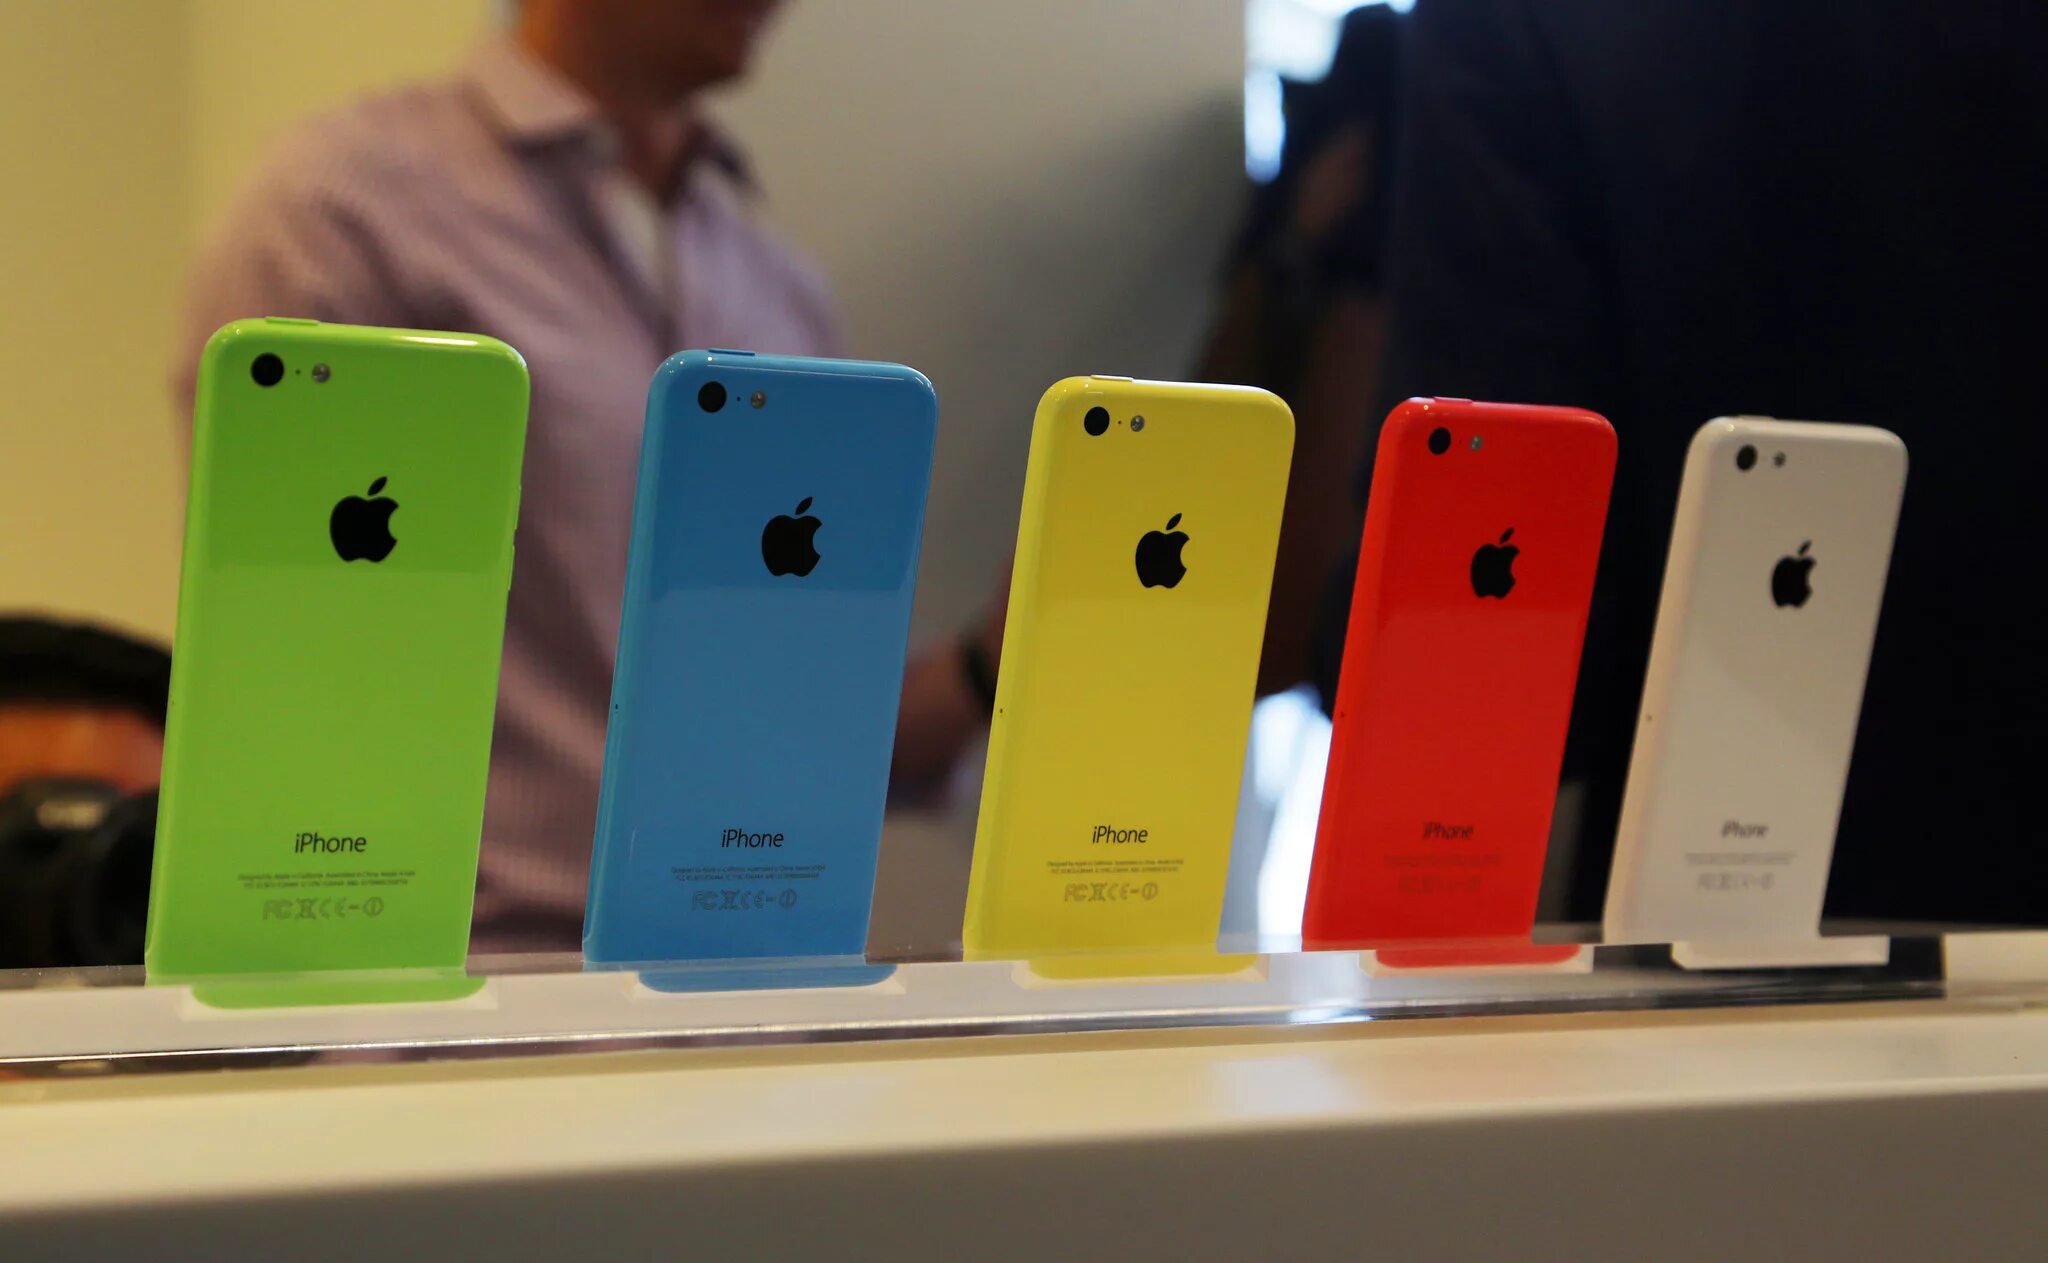 Айфон м5. Iphone 5c. Iphone 6c. Айфон 5c цвета. Iphone 5c (2013).